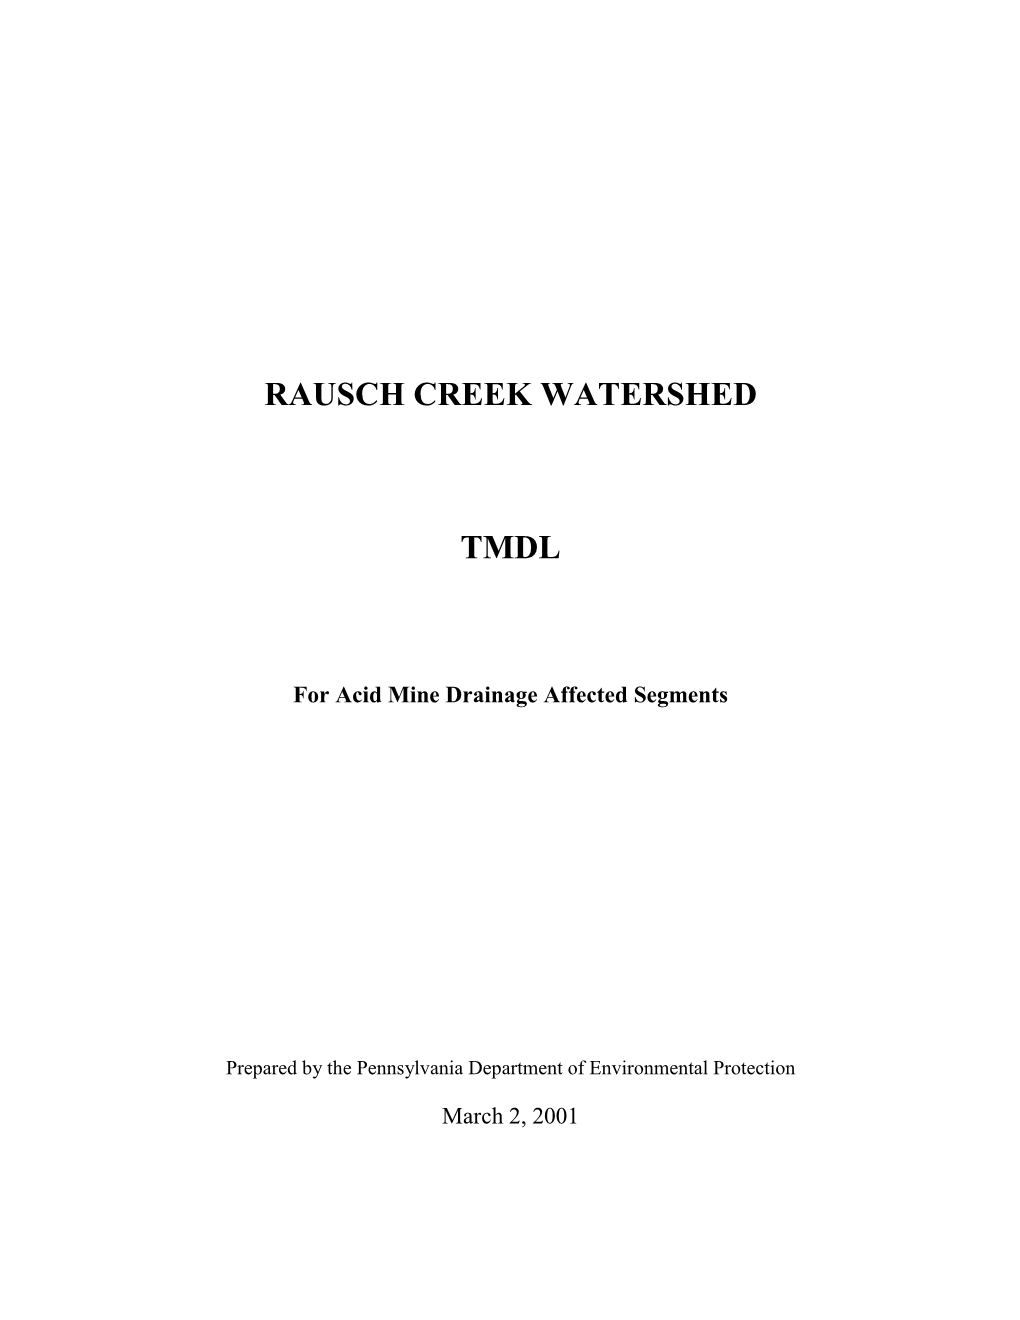 Rausch Creek Watershed